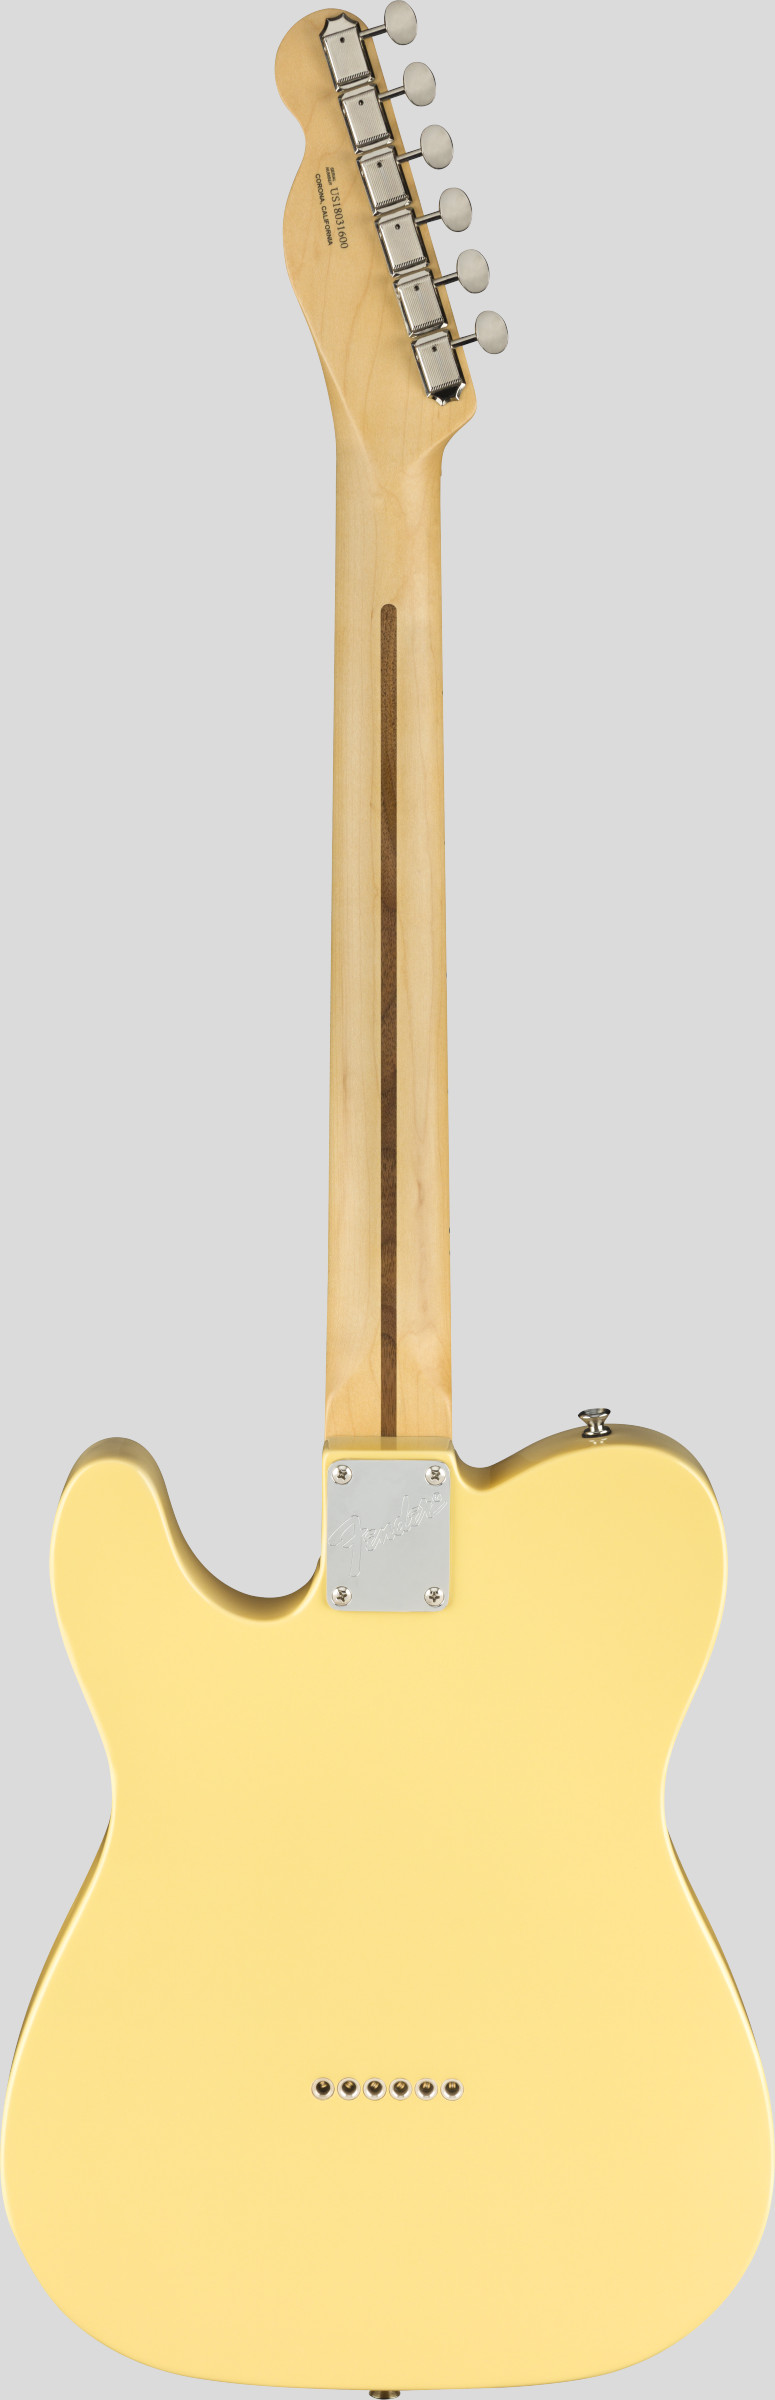 Fender American Performer Telecaster Vintage White 2